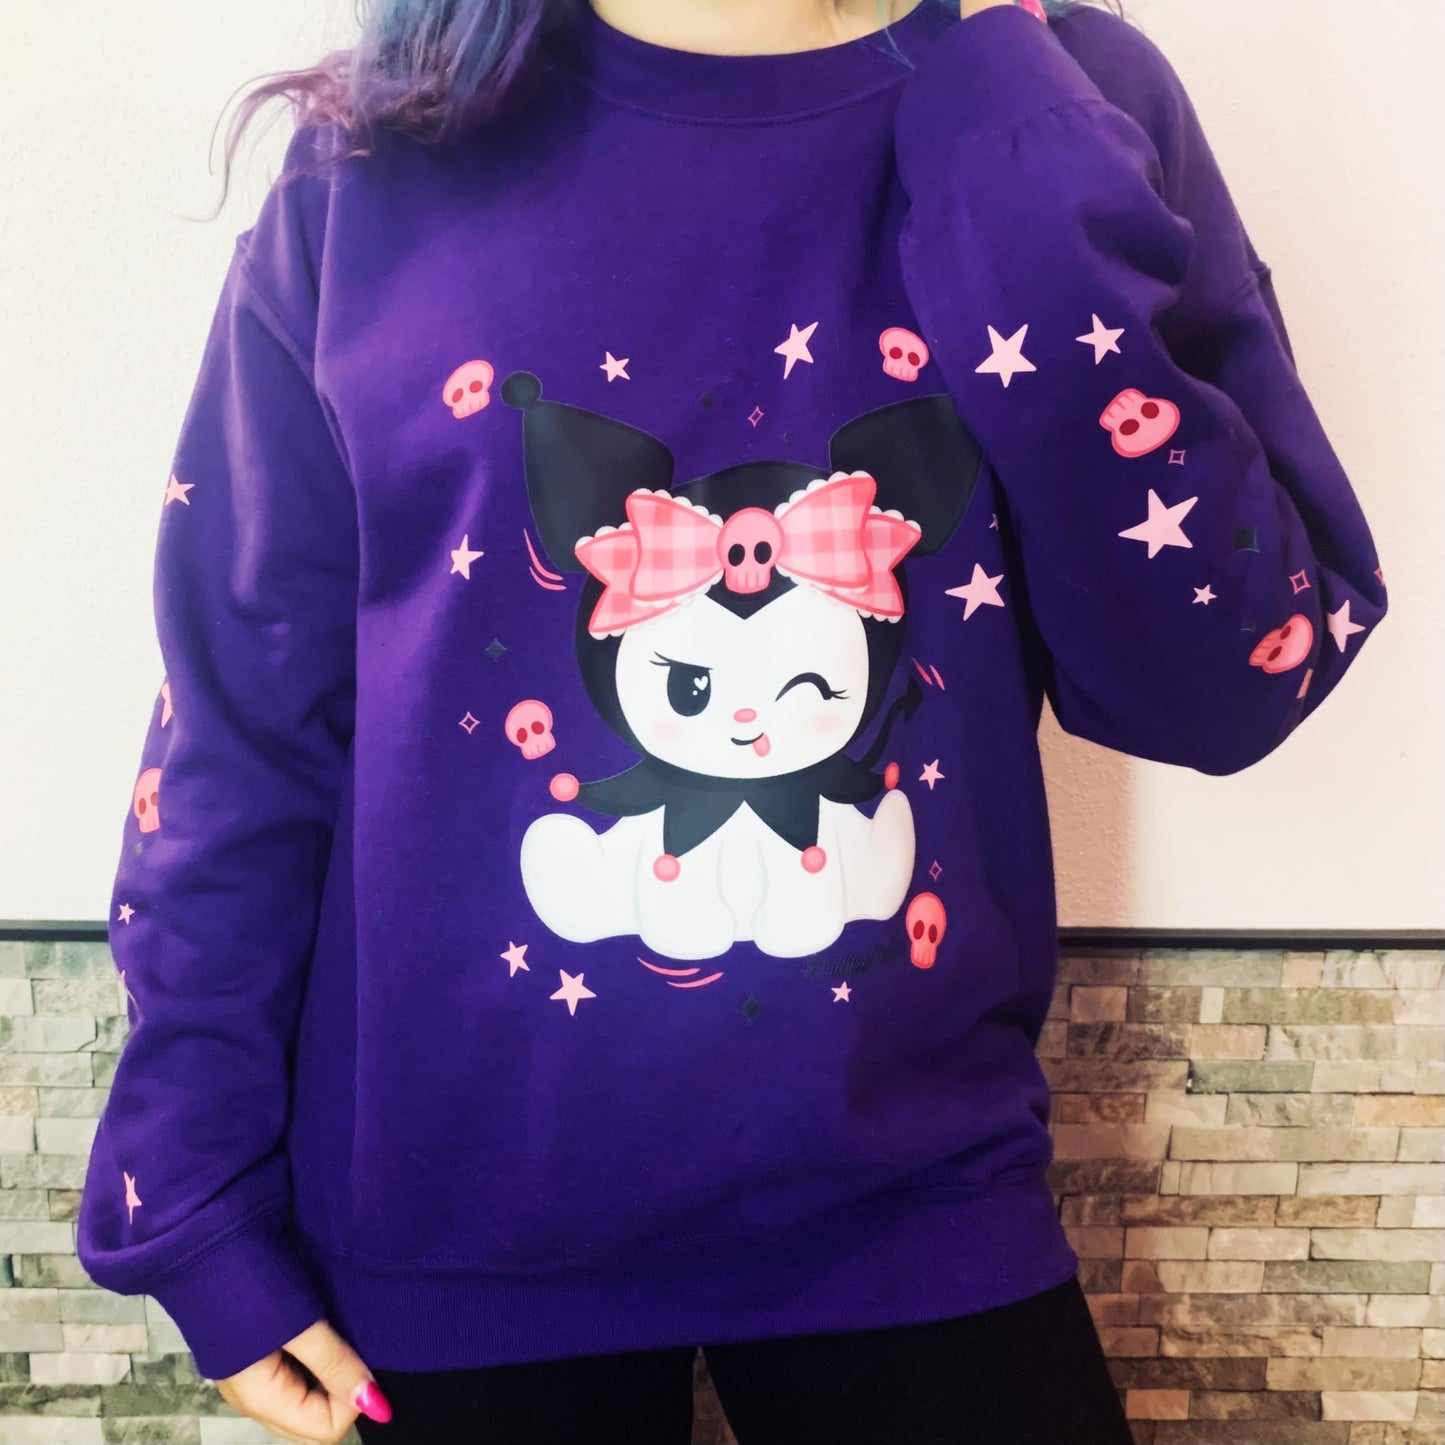 Cute devil sweatshirt (purple) - Please read description!